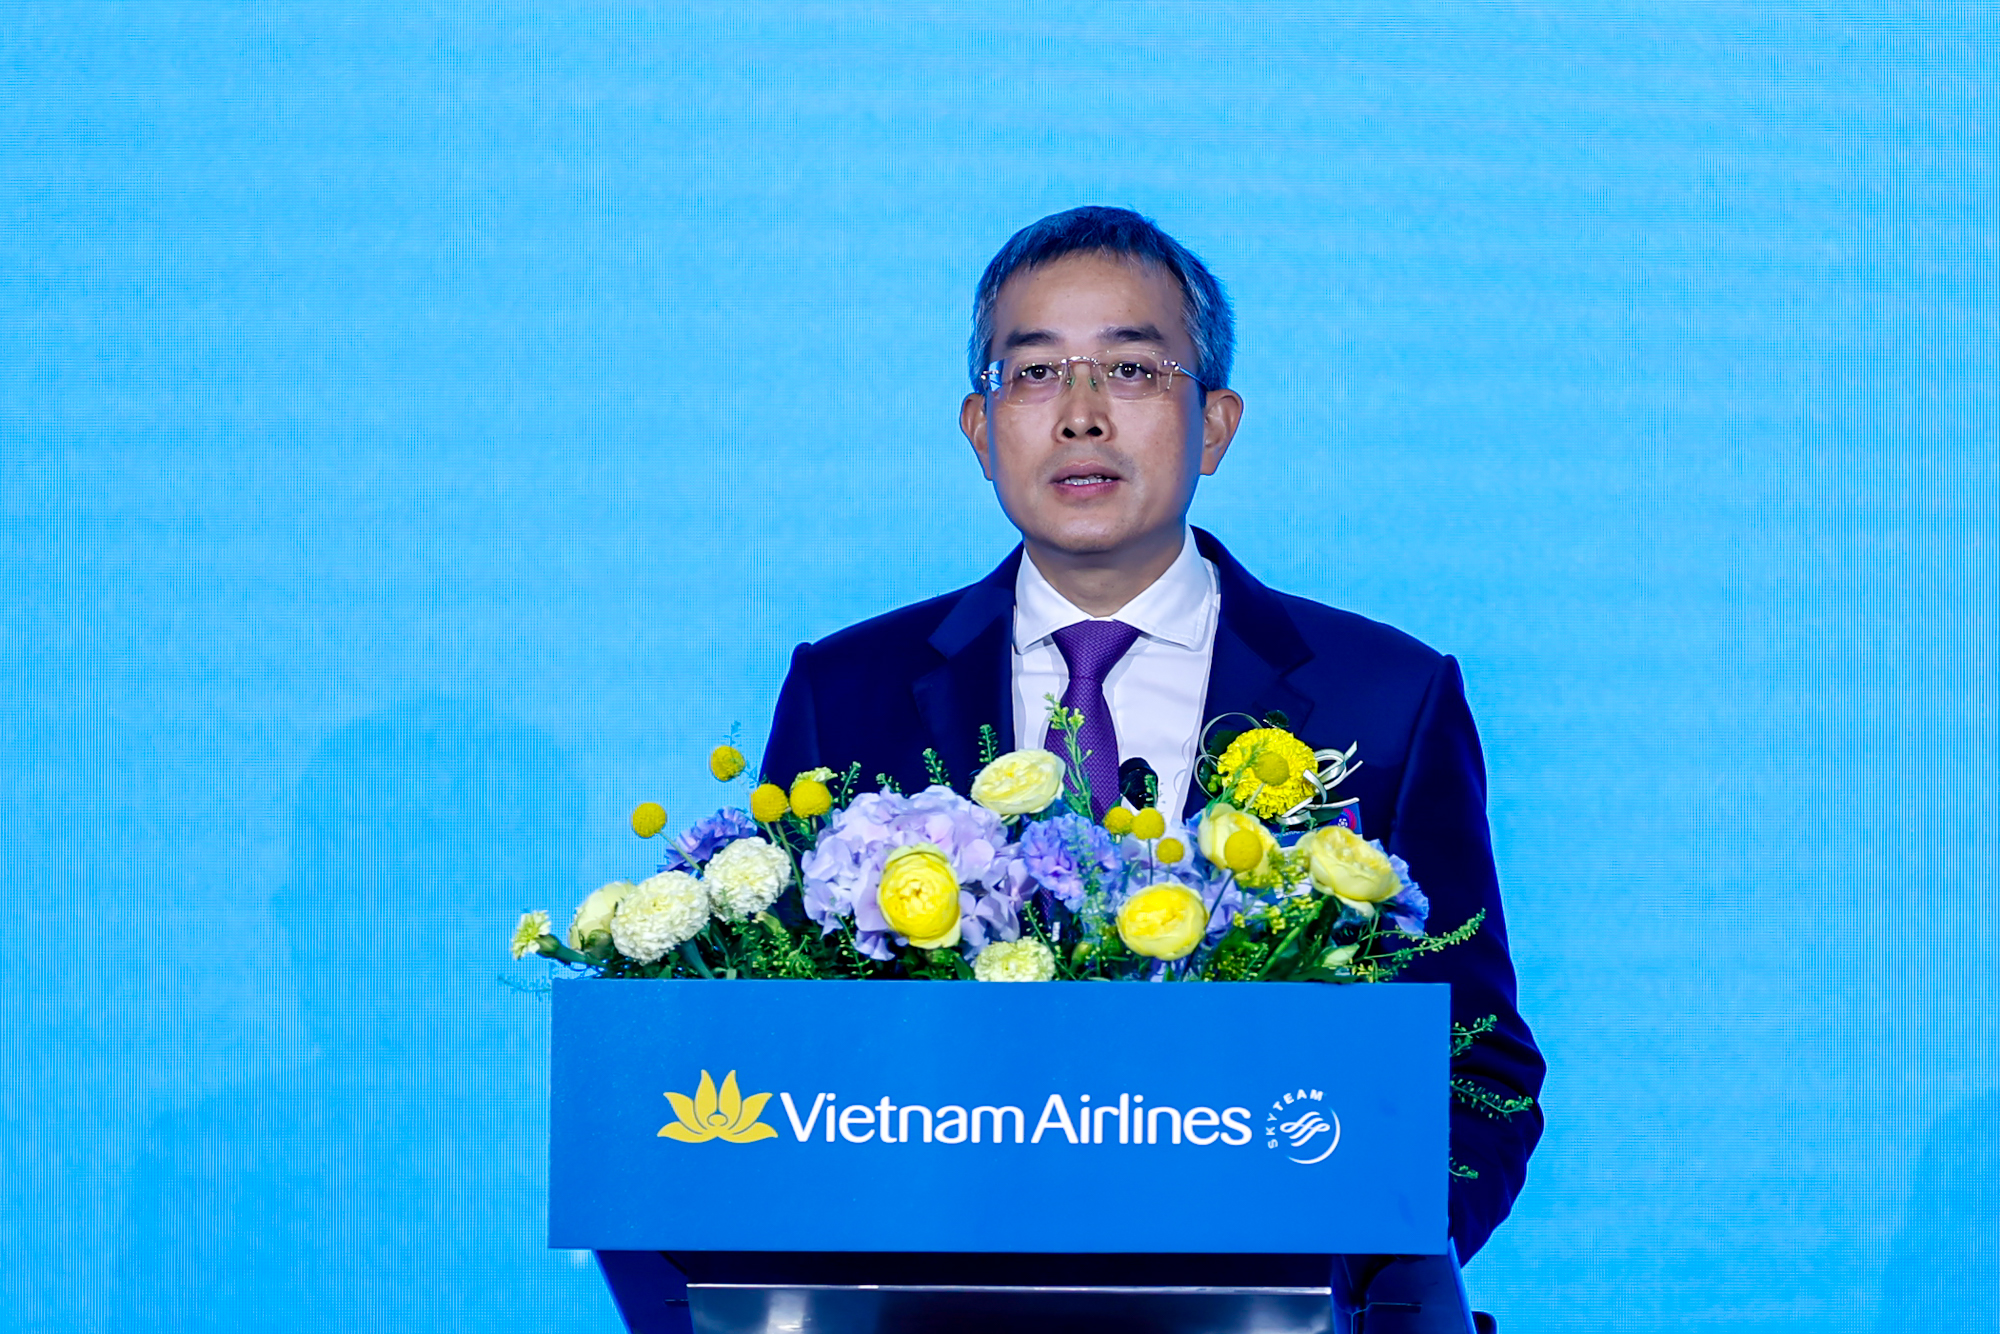 Ông Đặng Ngọc Hòa, Chủ tịch Hội đồng quản trị Vietnam Airlines phát biểu tại buổi lễ - Ảnh: VGP/Nhật Bắc